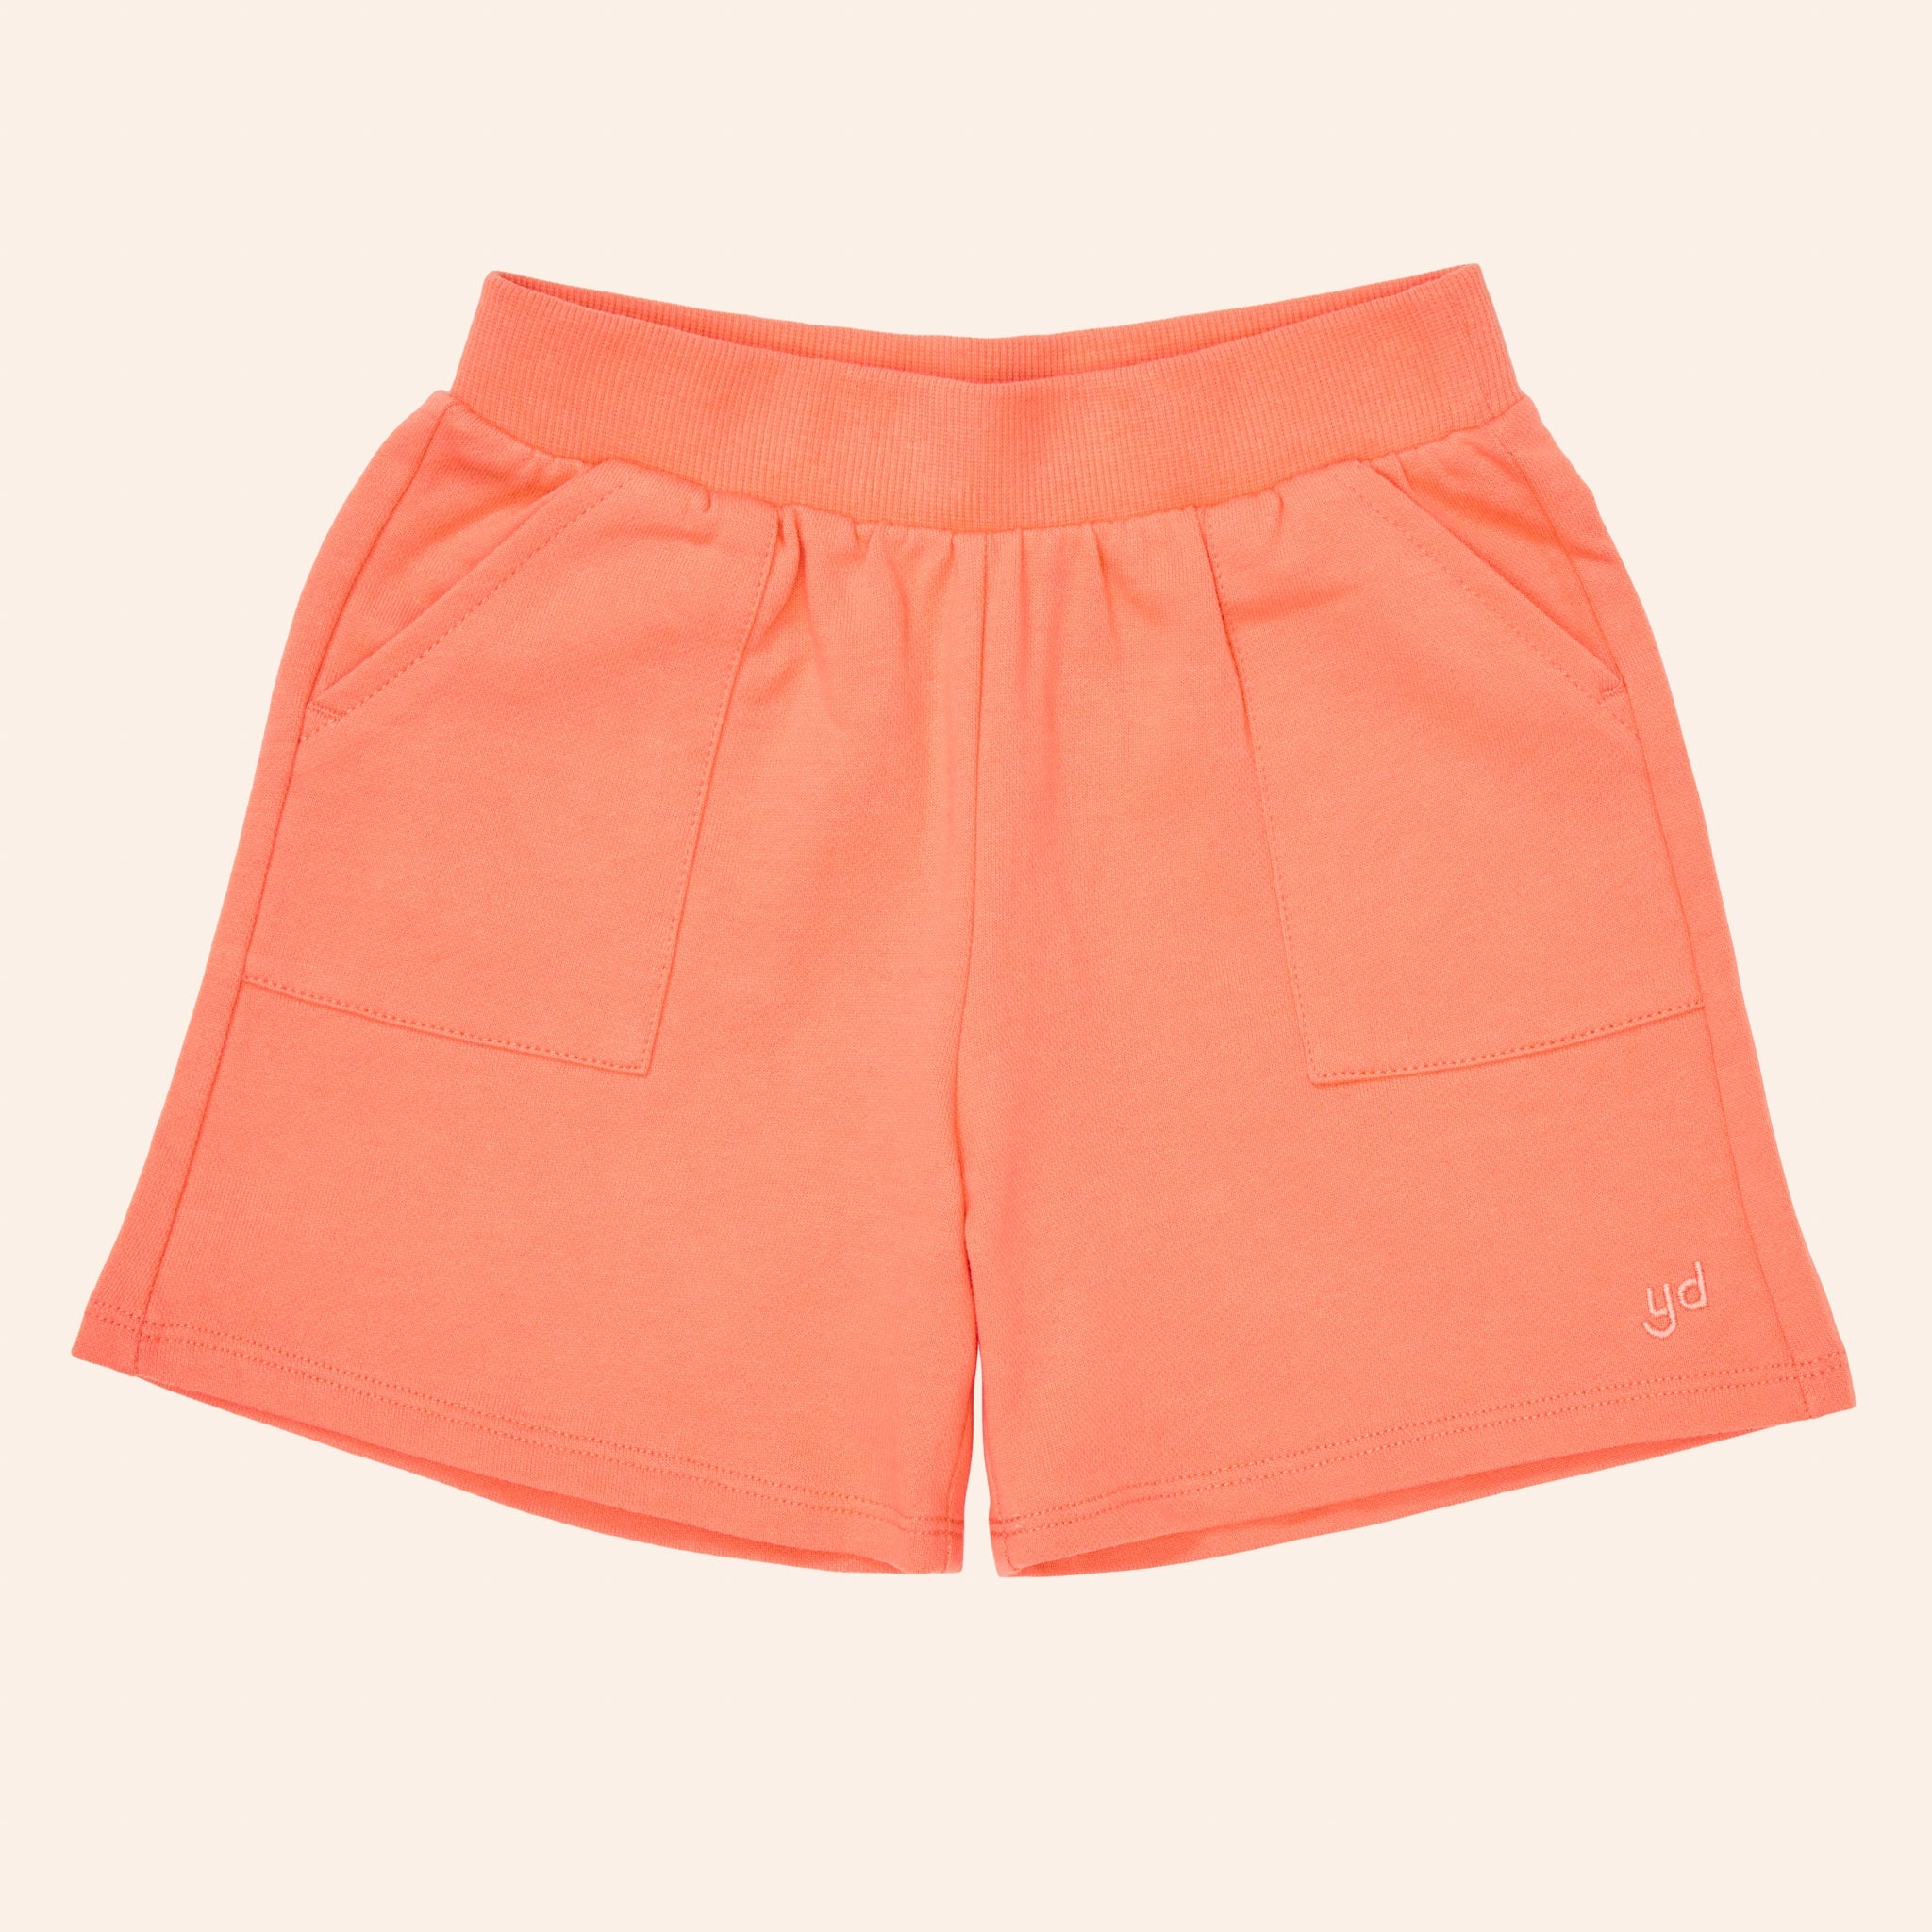 Maui Shorts (Peach Pink)